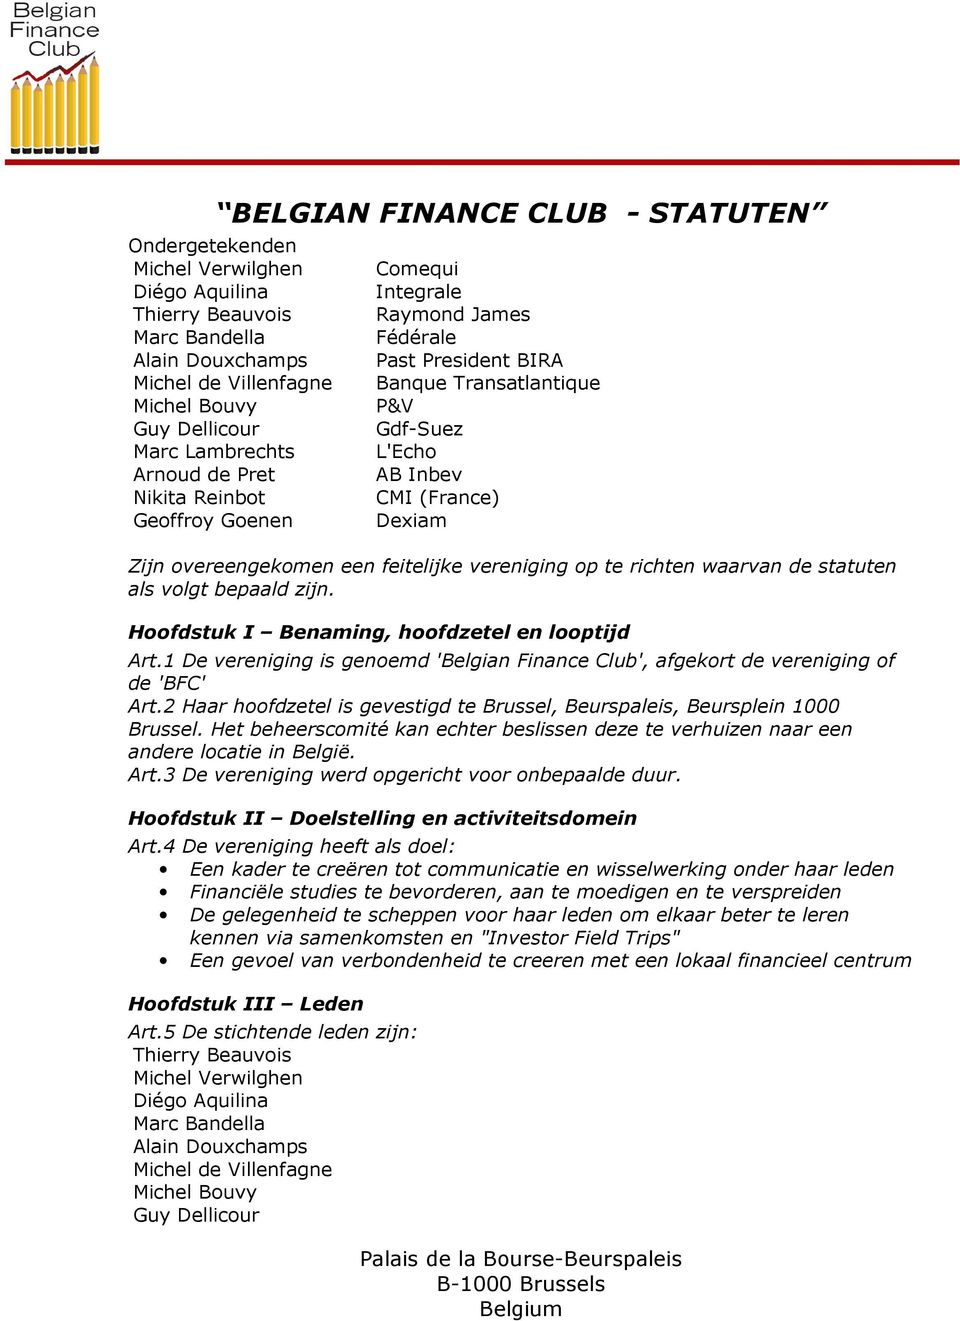 1 De vereniging is genoemd 'Belgian Finance Club', afgekort de vereniging of de 'BFC' Art.2 Haar hoofdzetel is gevestigd te Brussel, Beurspaleis, Beursplein 1000 Brussel.